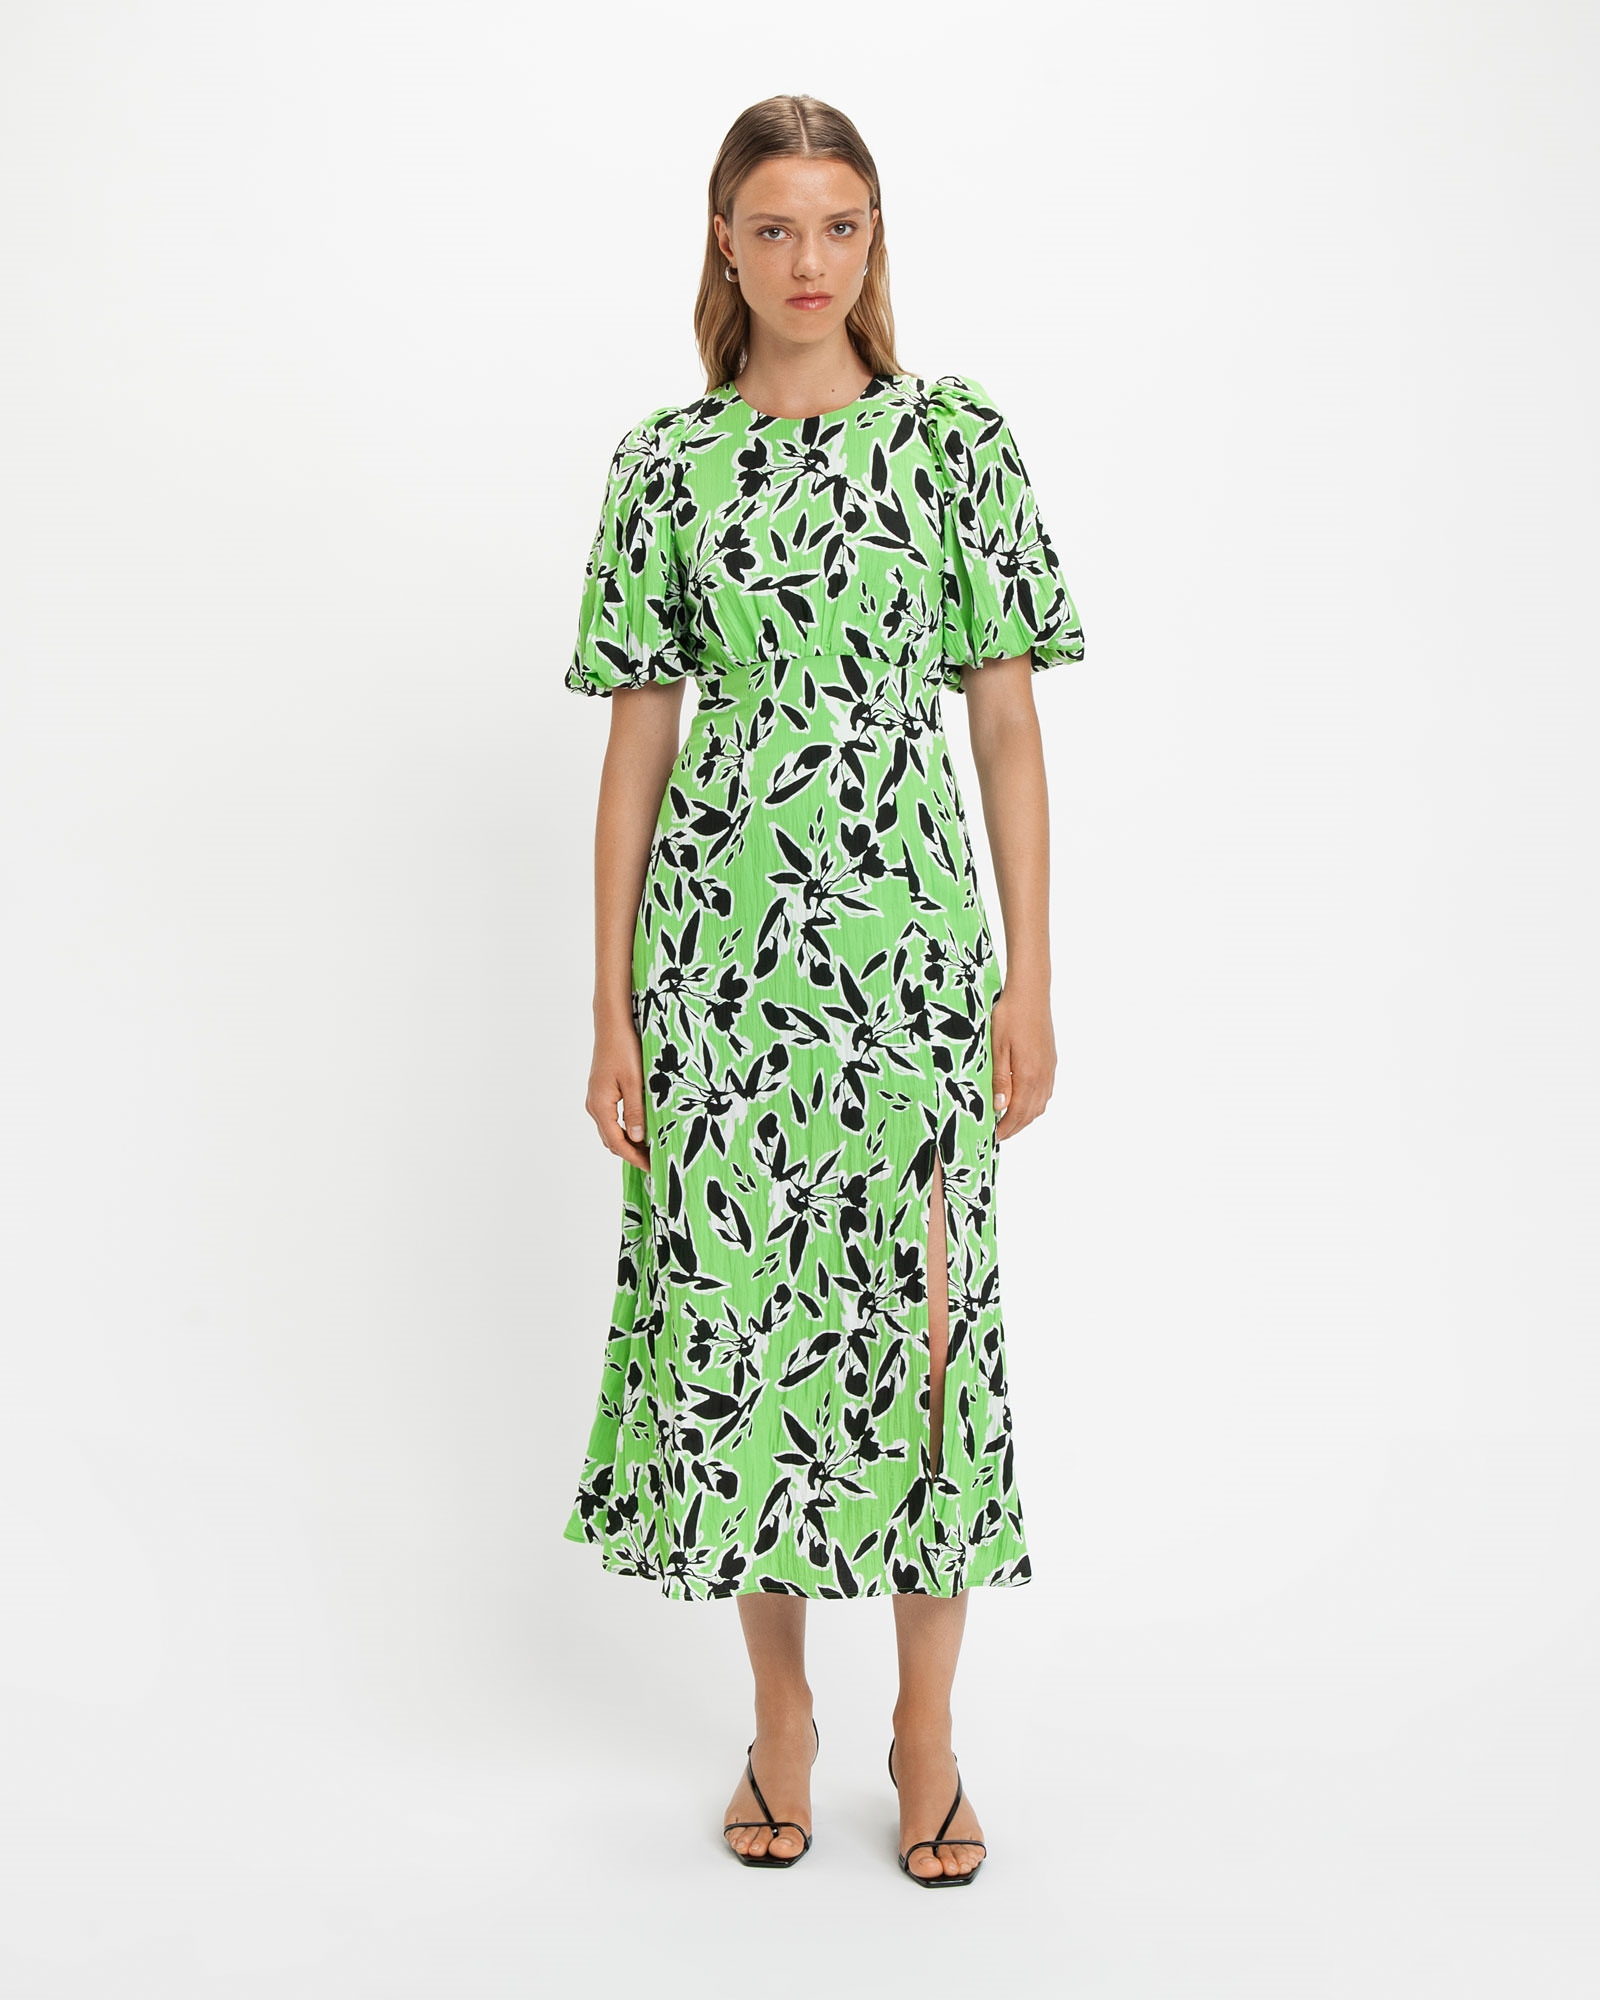 Dresses | Artistic Floral Midi Dress | 396 Green Grass